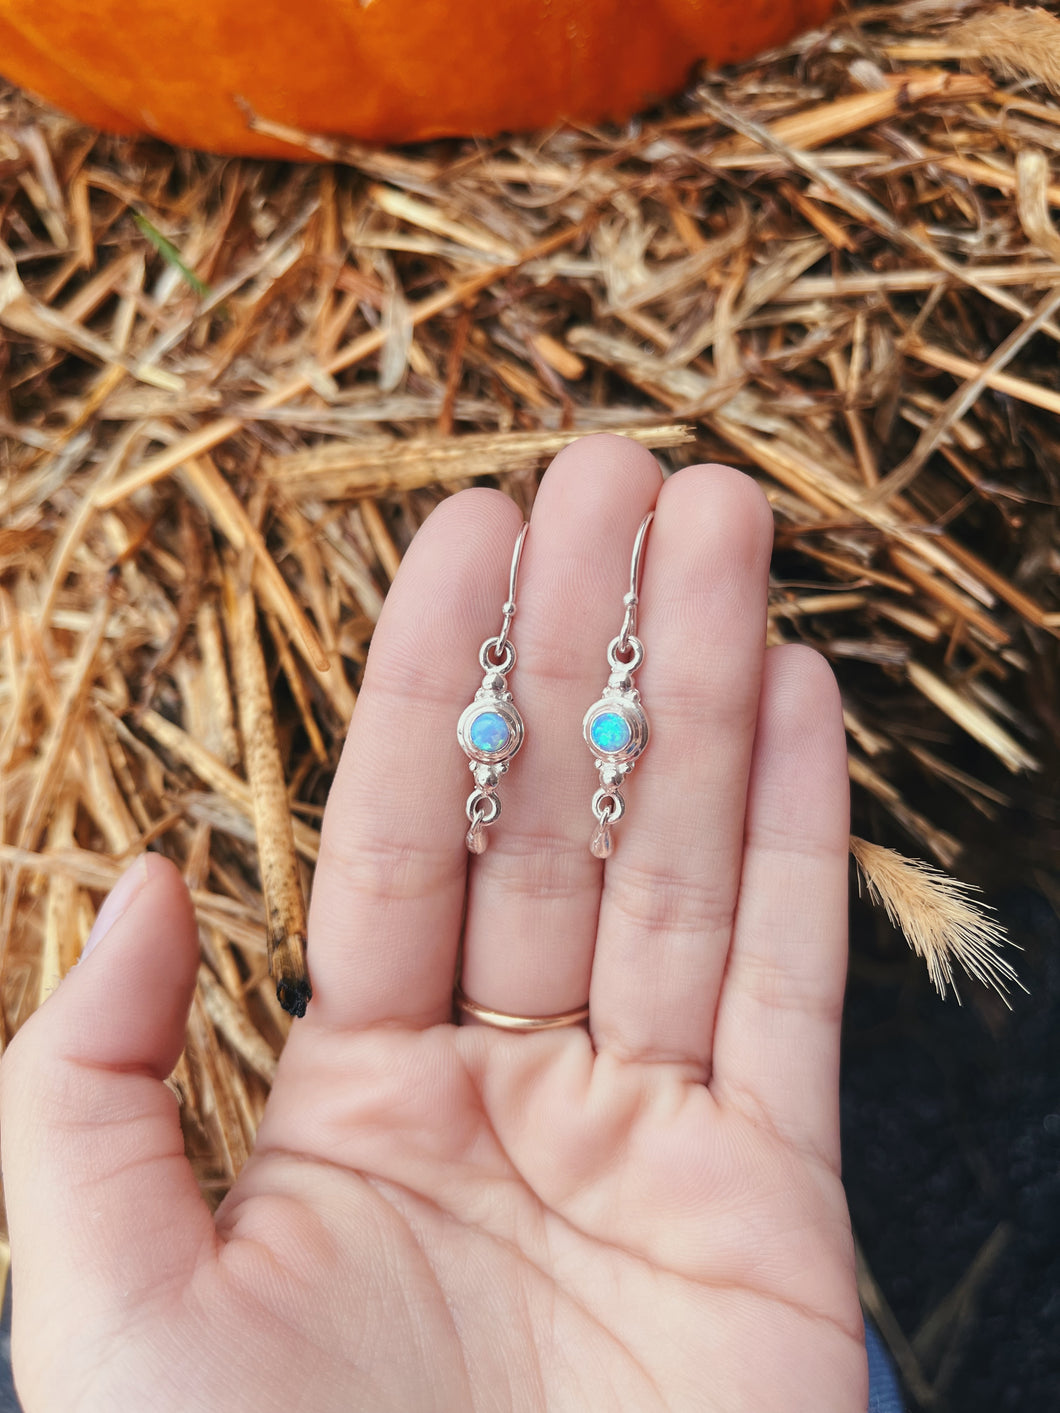 Opal Earrings with Dangle